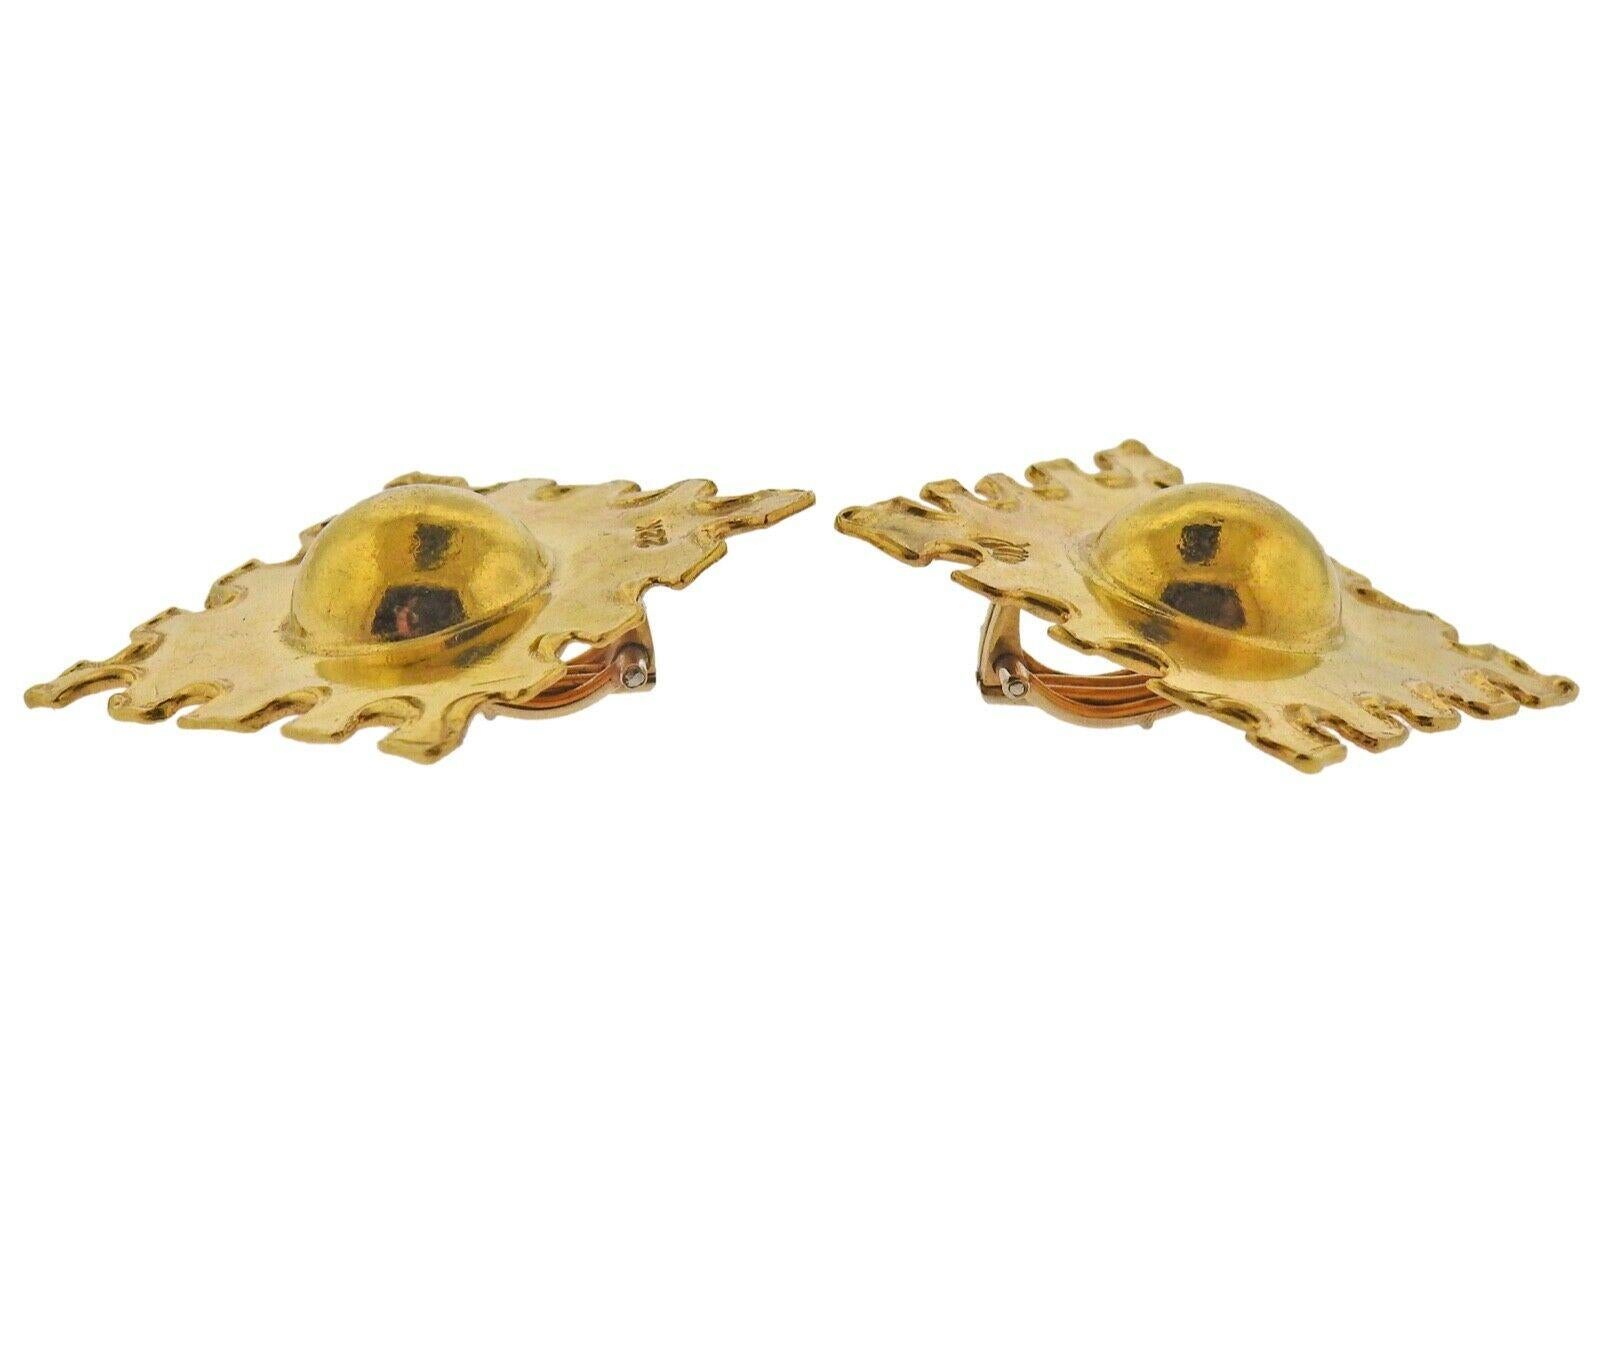 22k Yellow Gold earrings by Jean Mahie. Earrings measure 37mm x 38mm. Marked- JM, 22k. Weight - 14 grams.
